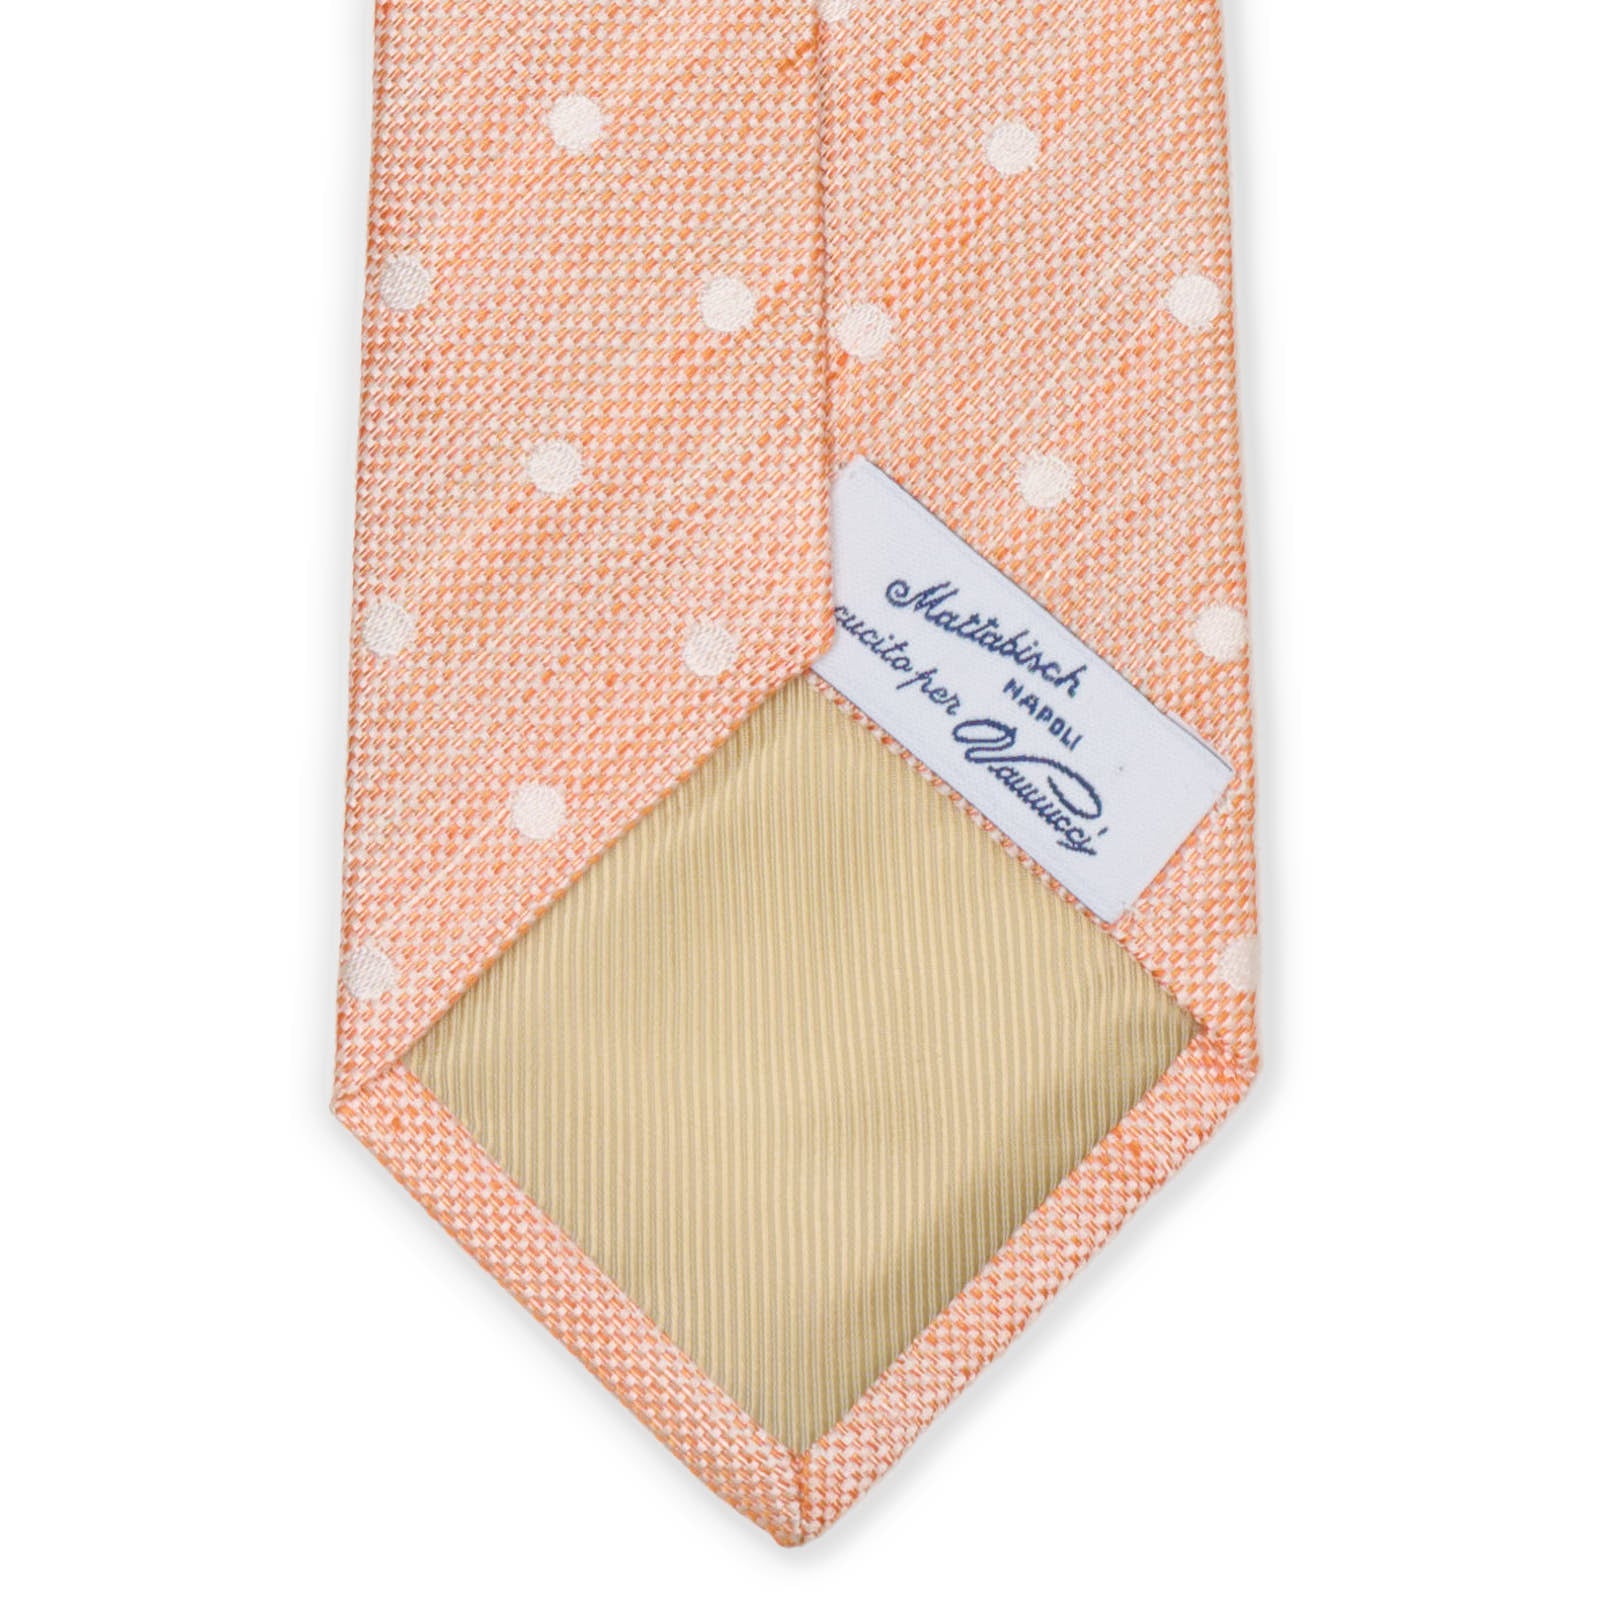 MATTABISCH for VANNUCCI Orange Polka Dot Silk - Linen Tie NEW